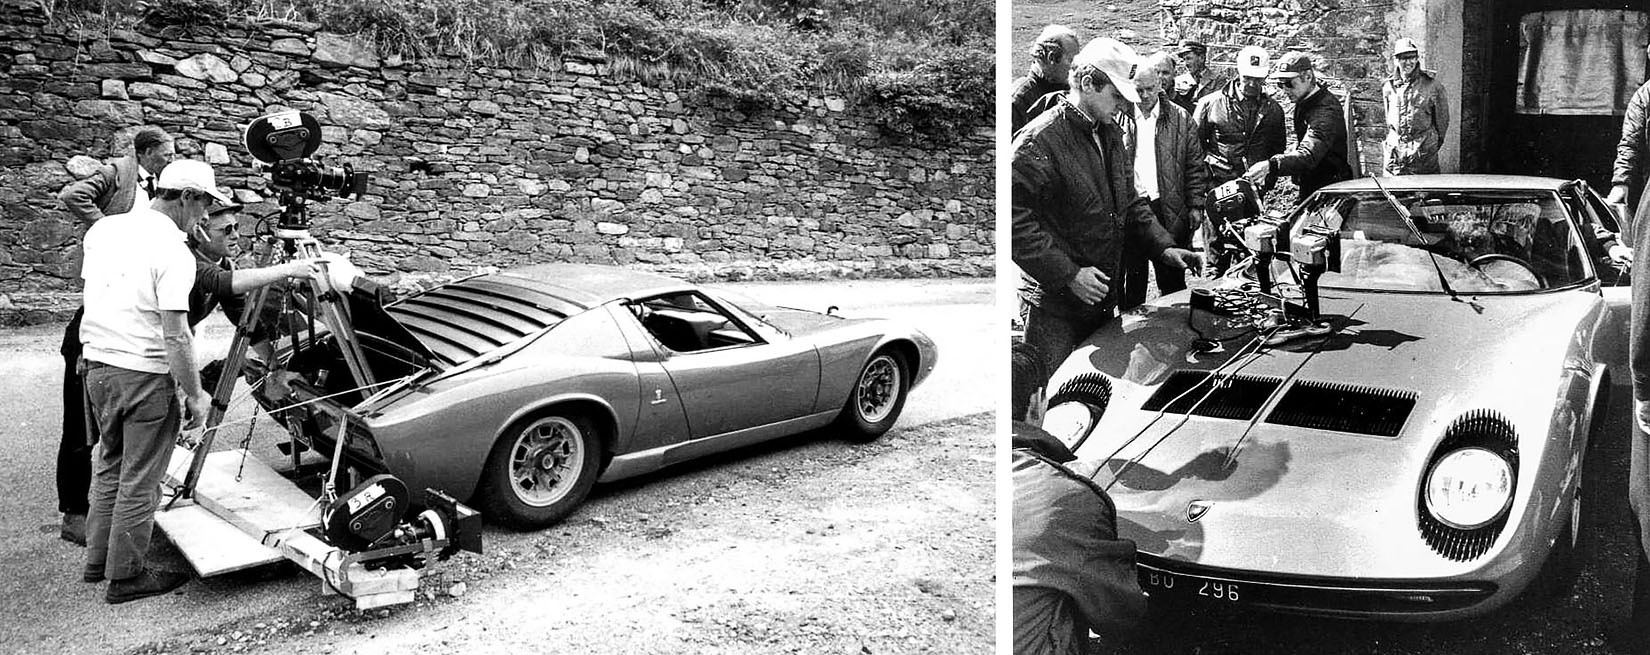 1968 Lamborghini Miura P400 - The Italian Job